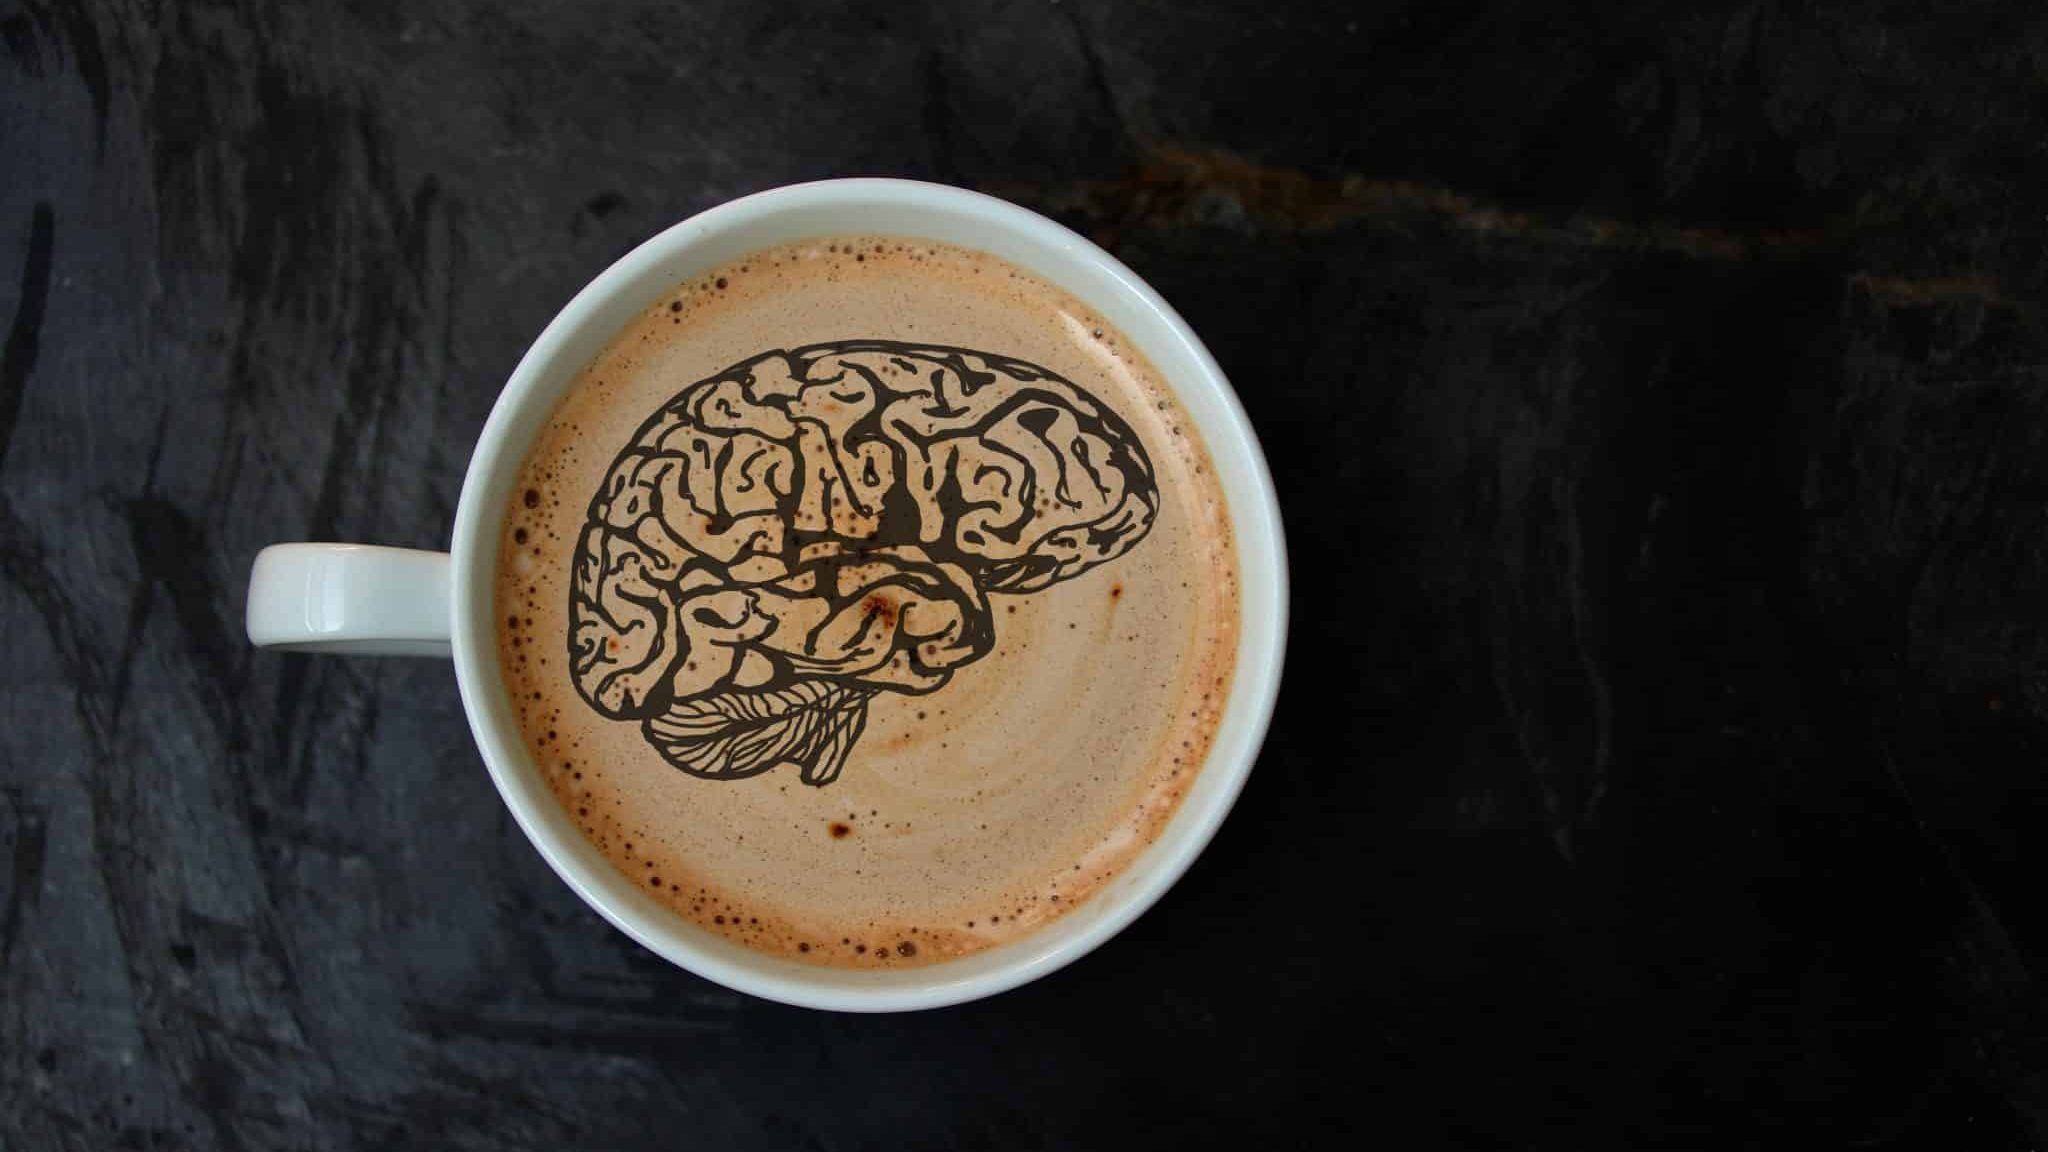 La science démontre les effets moléculaires de la caféine dans le